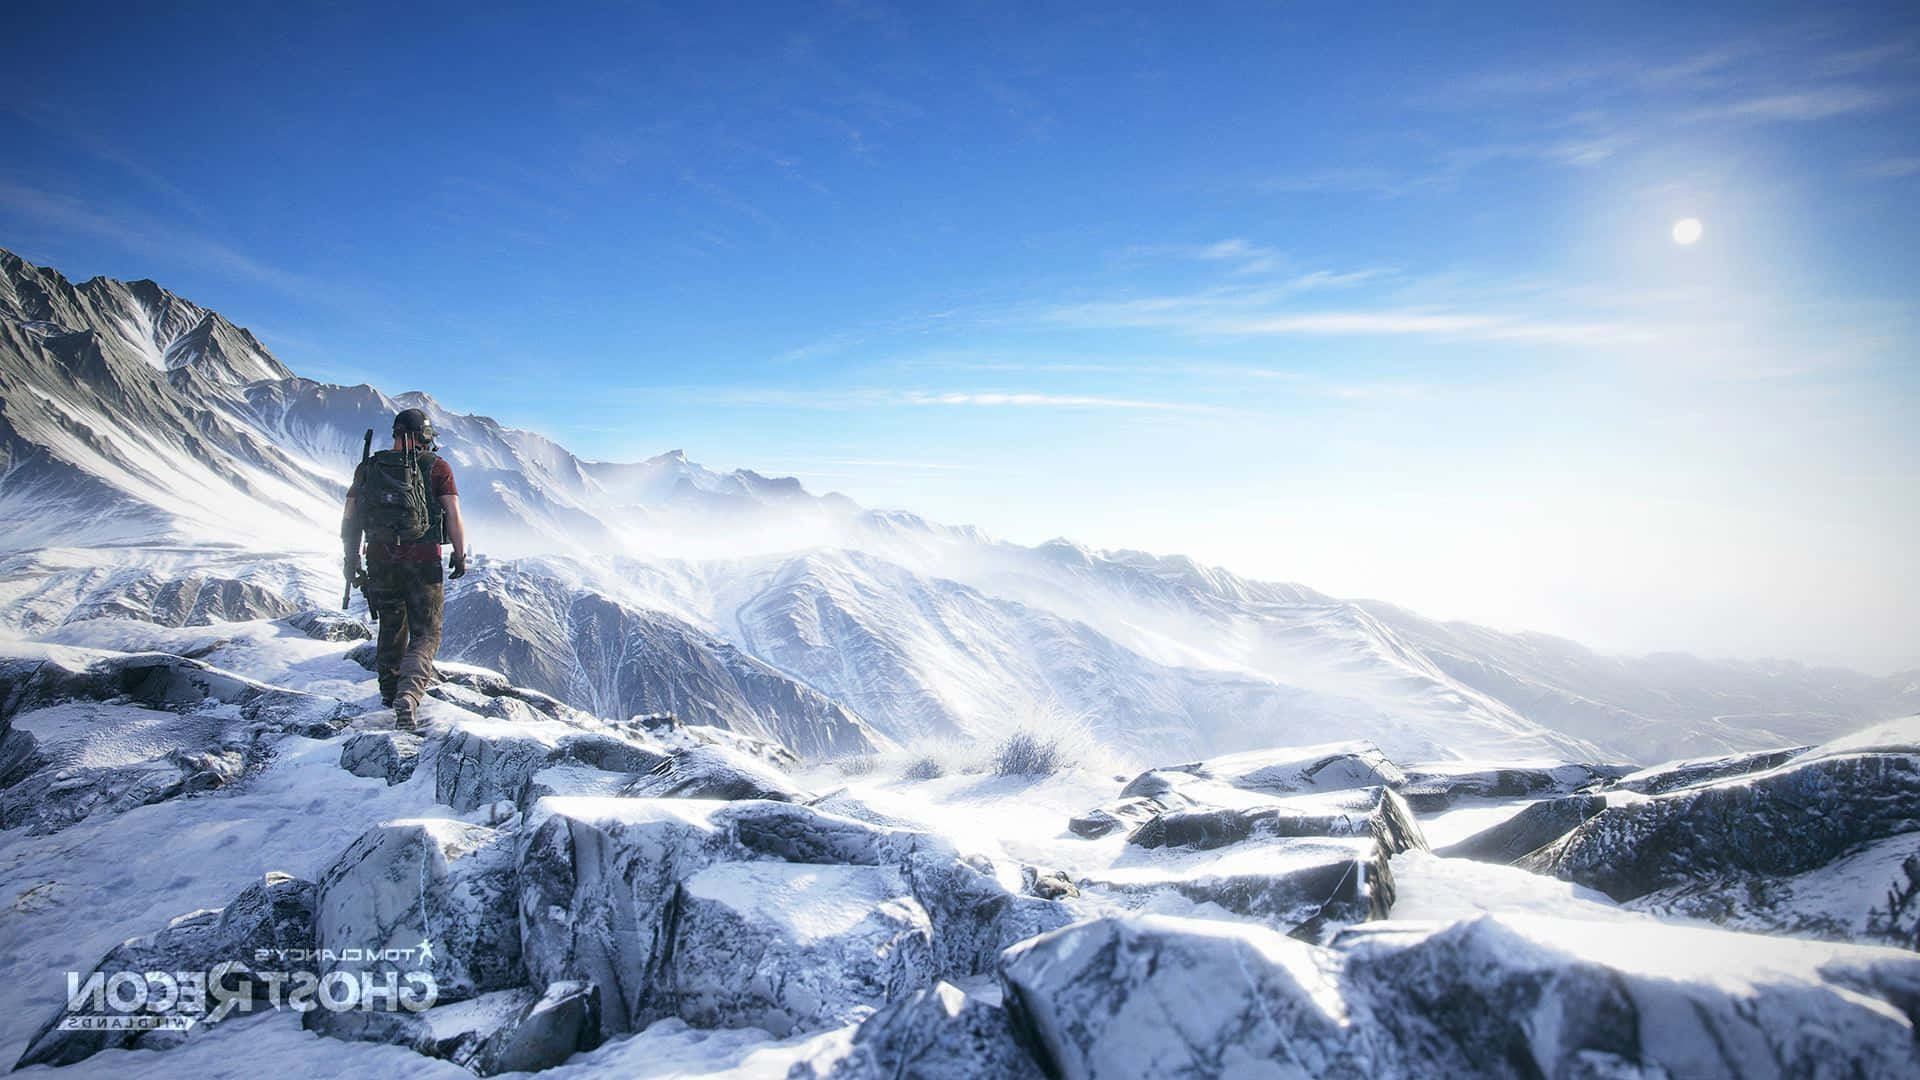 Einmann Steht Auf Einem Berg In Einer Verschneiten Gegend.